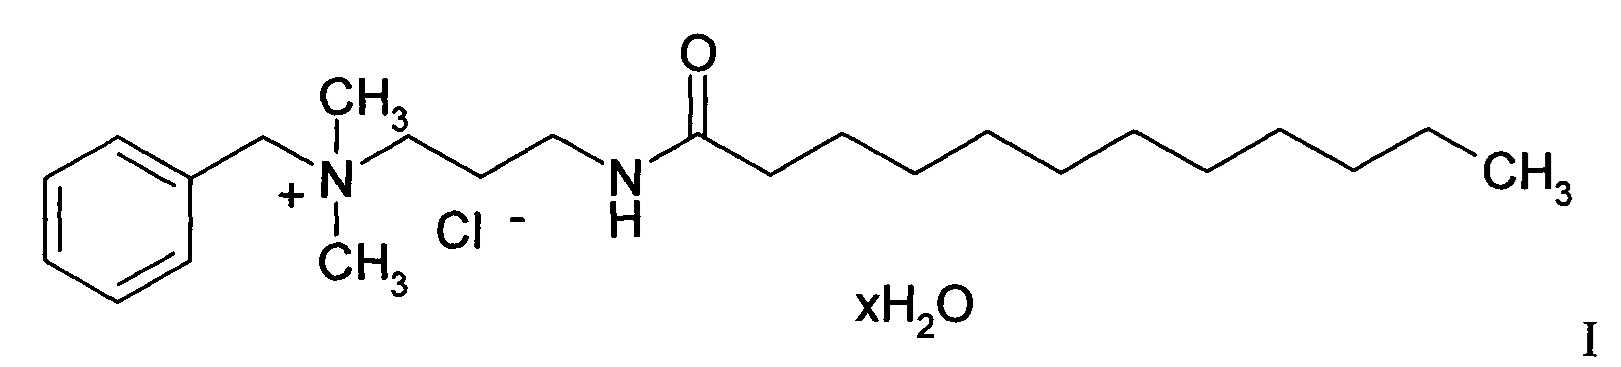 Способ получения N-бензил [1-(додециноиламино)-3-(диметиламино)]пропана аммоний хлорида моногидрата